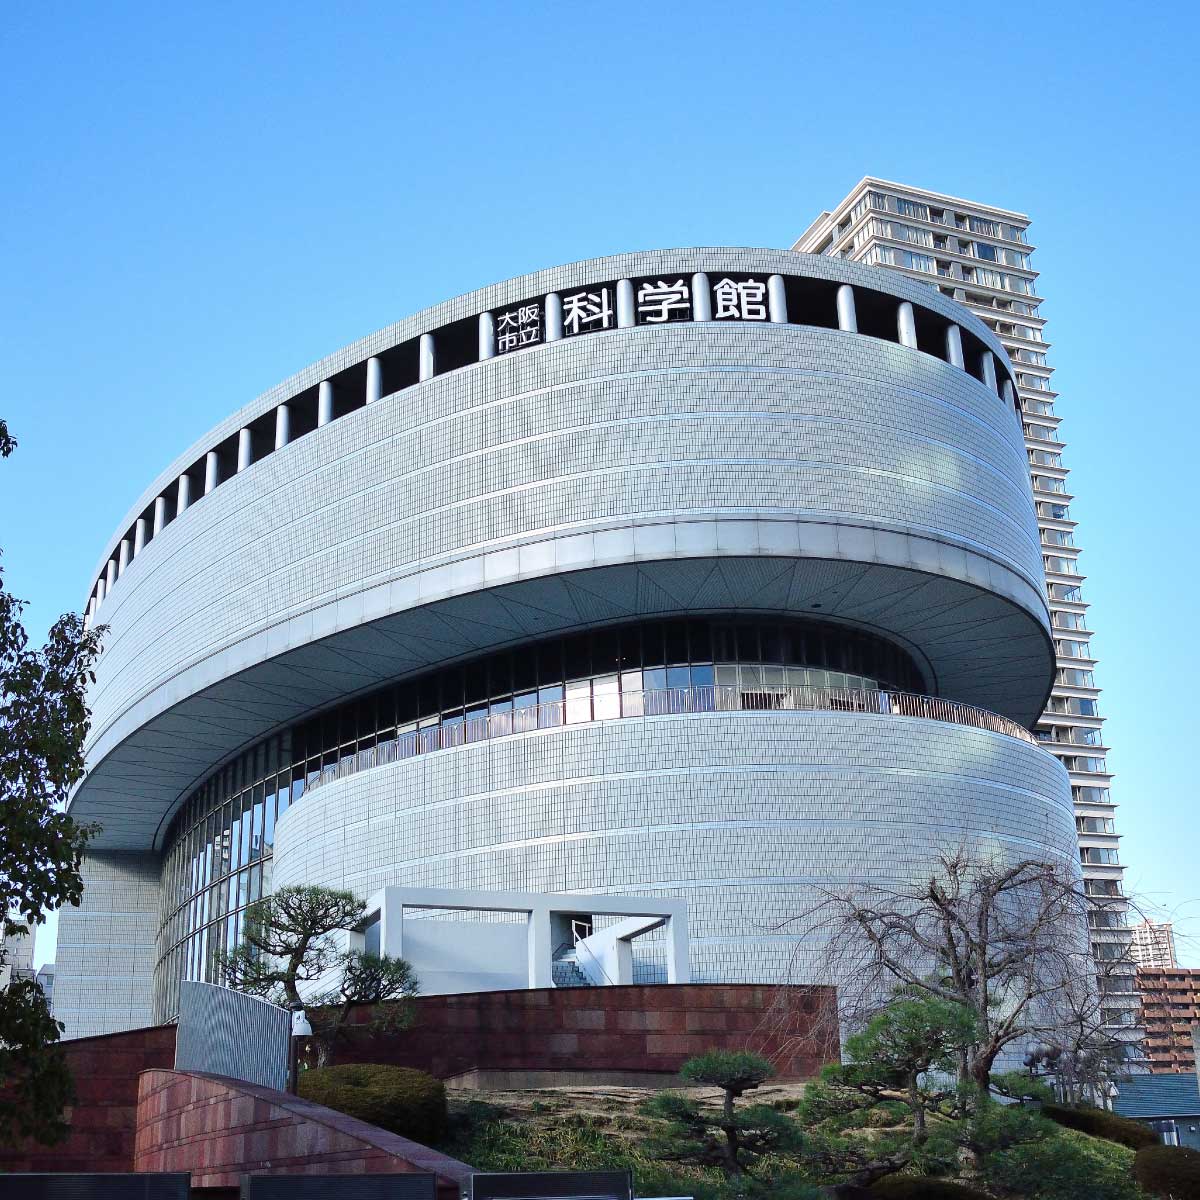 พิพิธภัณฑ์ศิลปะแห่งชาติโอซาก้า (The National Museum of Art, Osaka)   ที่เที่ยวโอซาก้ายอดนิยม